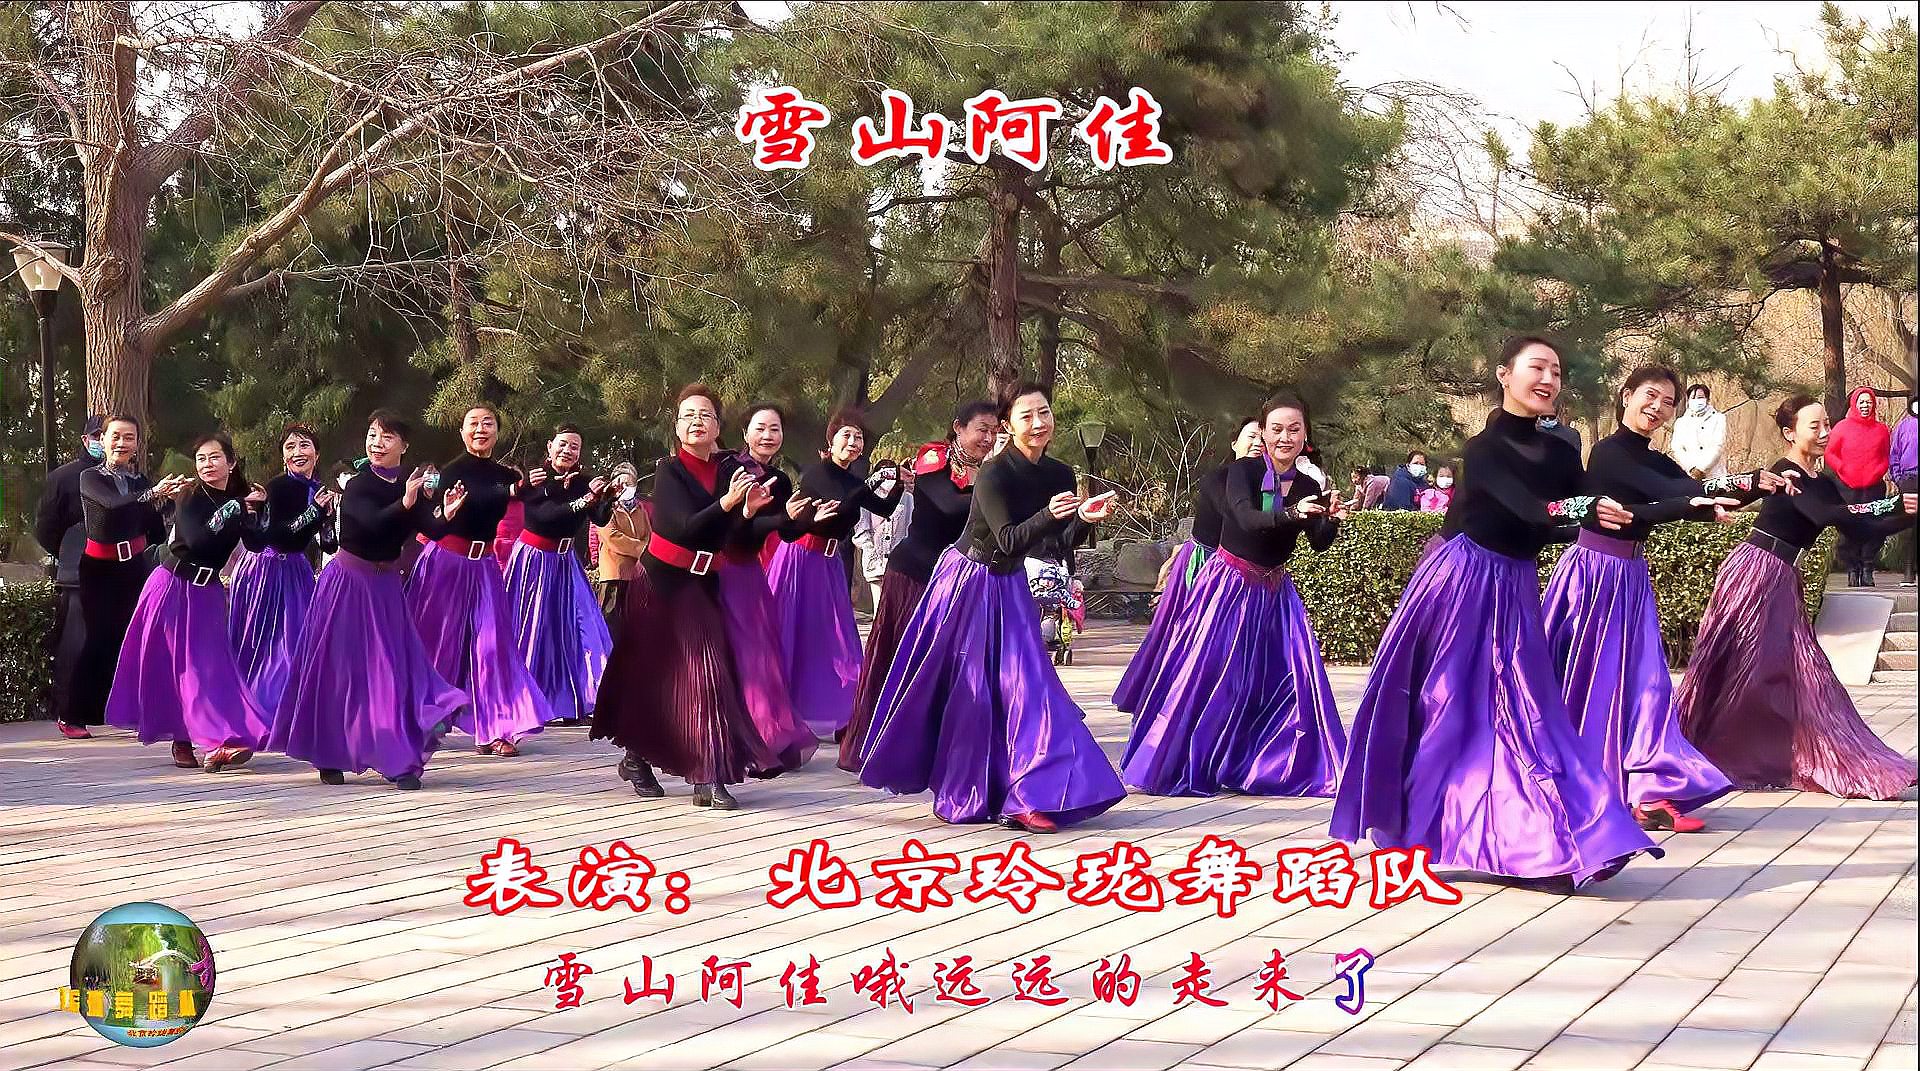 玲珑广场舞《雪山阿佳》,小红老师领舞,一群美阿佳跳得就是美!